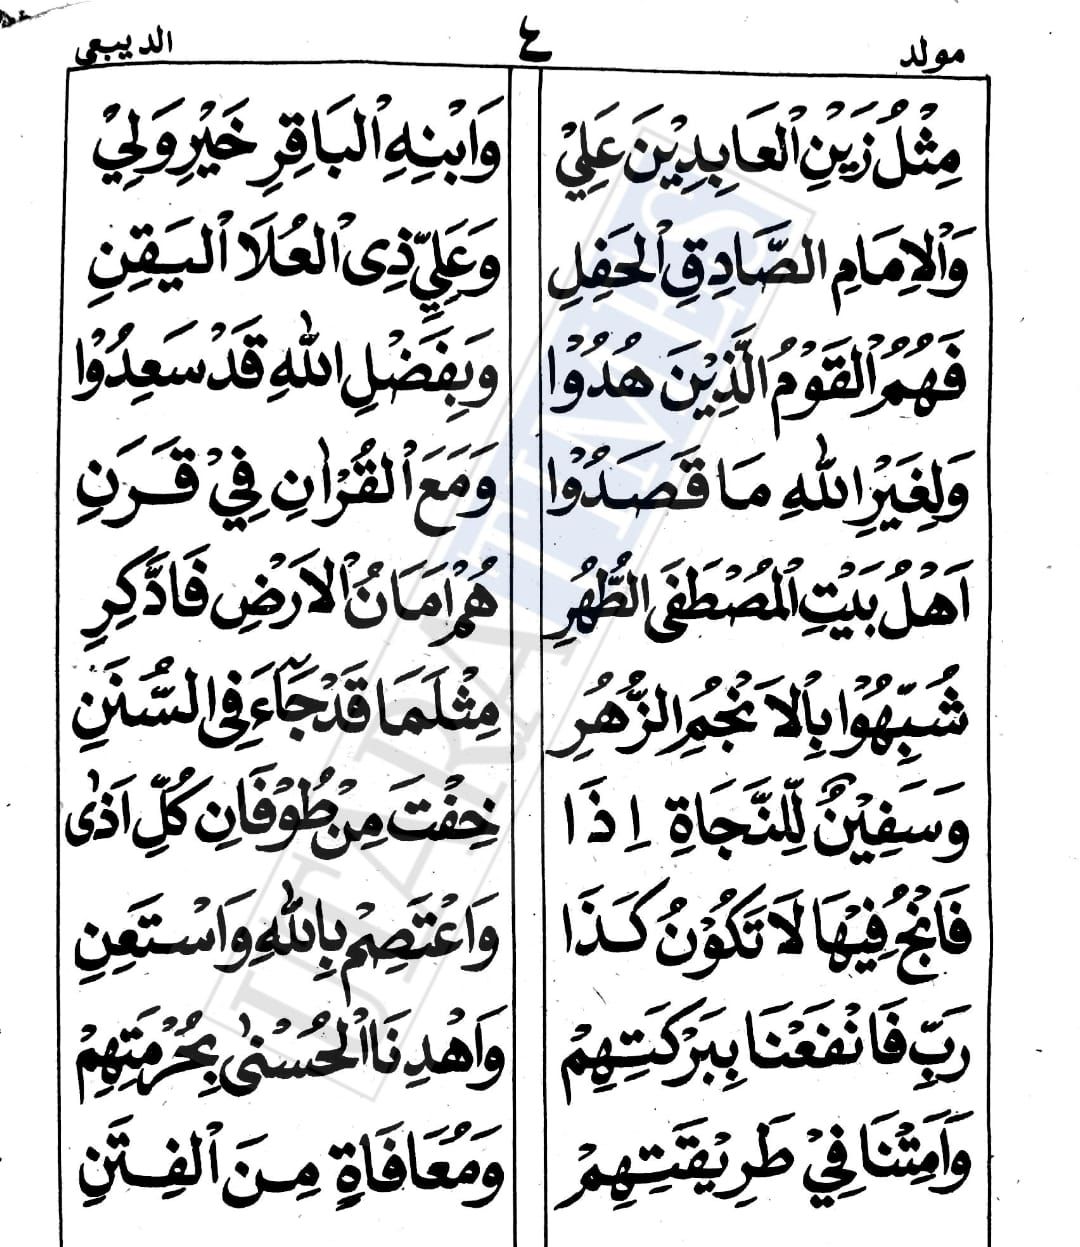 Informasi lengkap tentang Bacaan Sholawat Ya Rasulullah Salamun Alaik Versi Arab, Baca Selengkapnya Berikut.